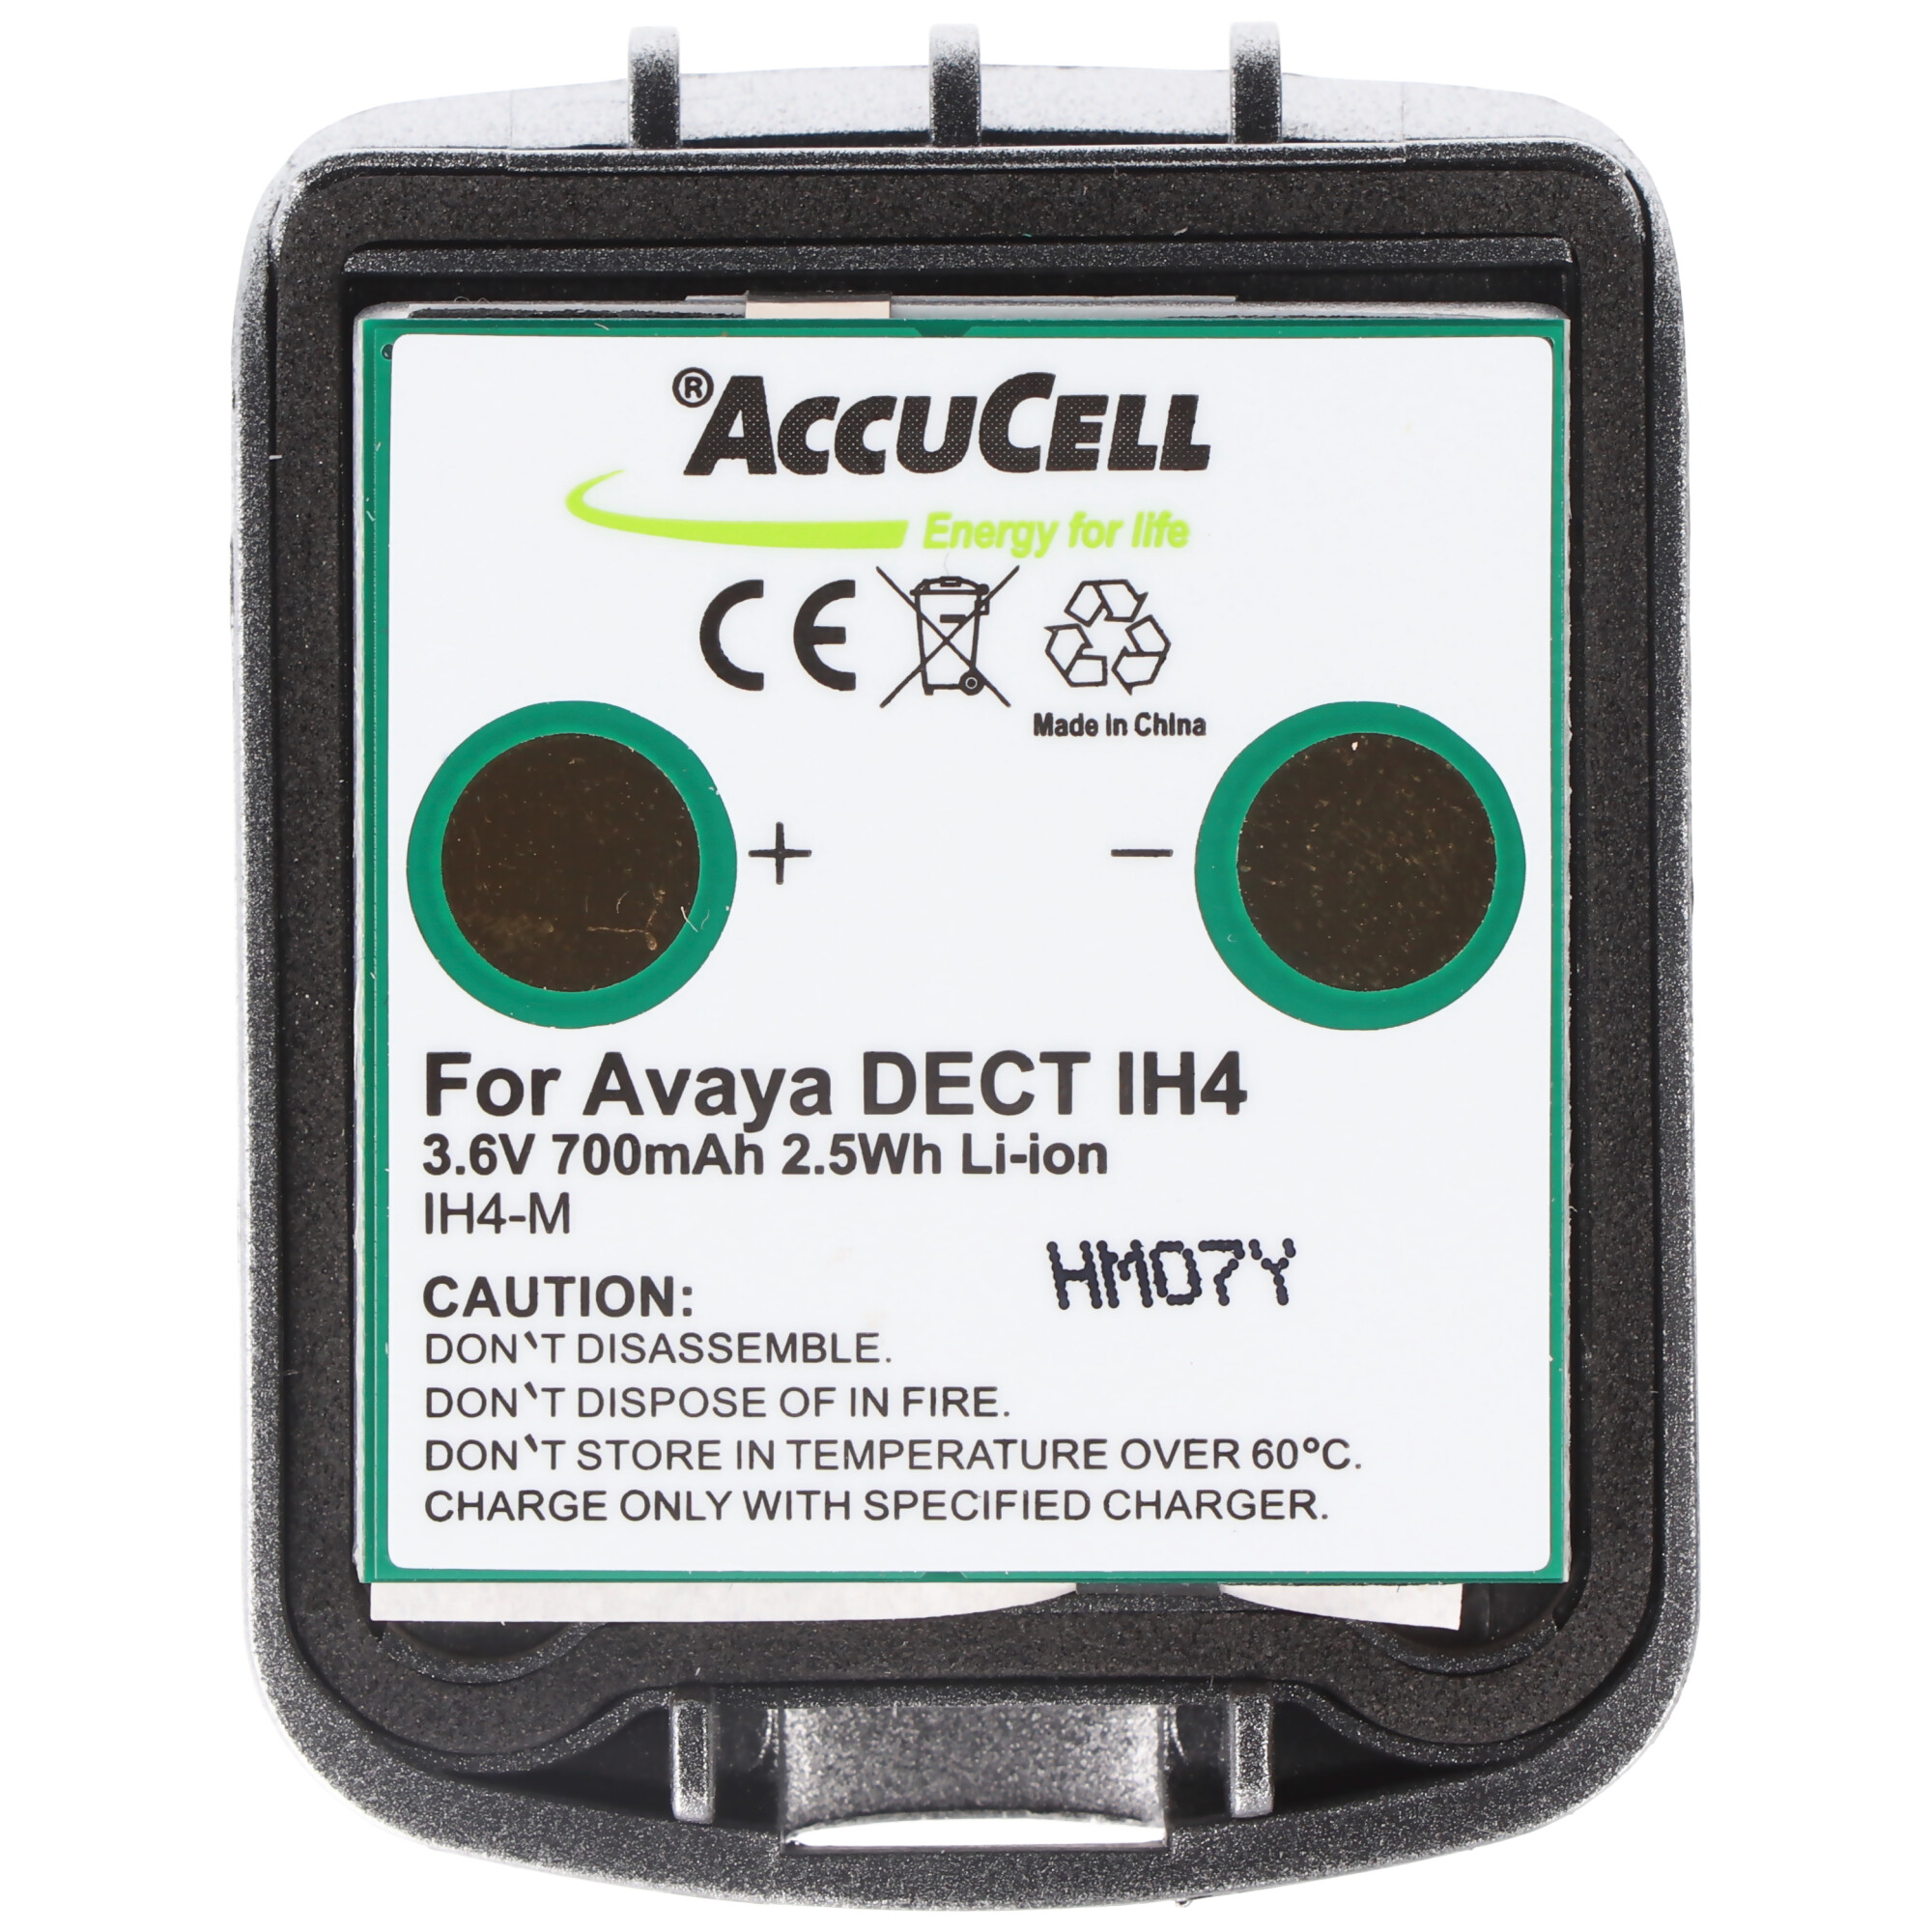 AccuCell Akku passend für den Avaya DECT IH4 Li-Ion Akku 4.999.130.768 mit Gehäuse 3,6V 700mAh, Funkwerk DECT D4, DECT FC4